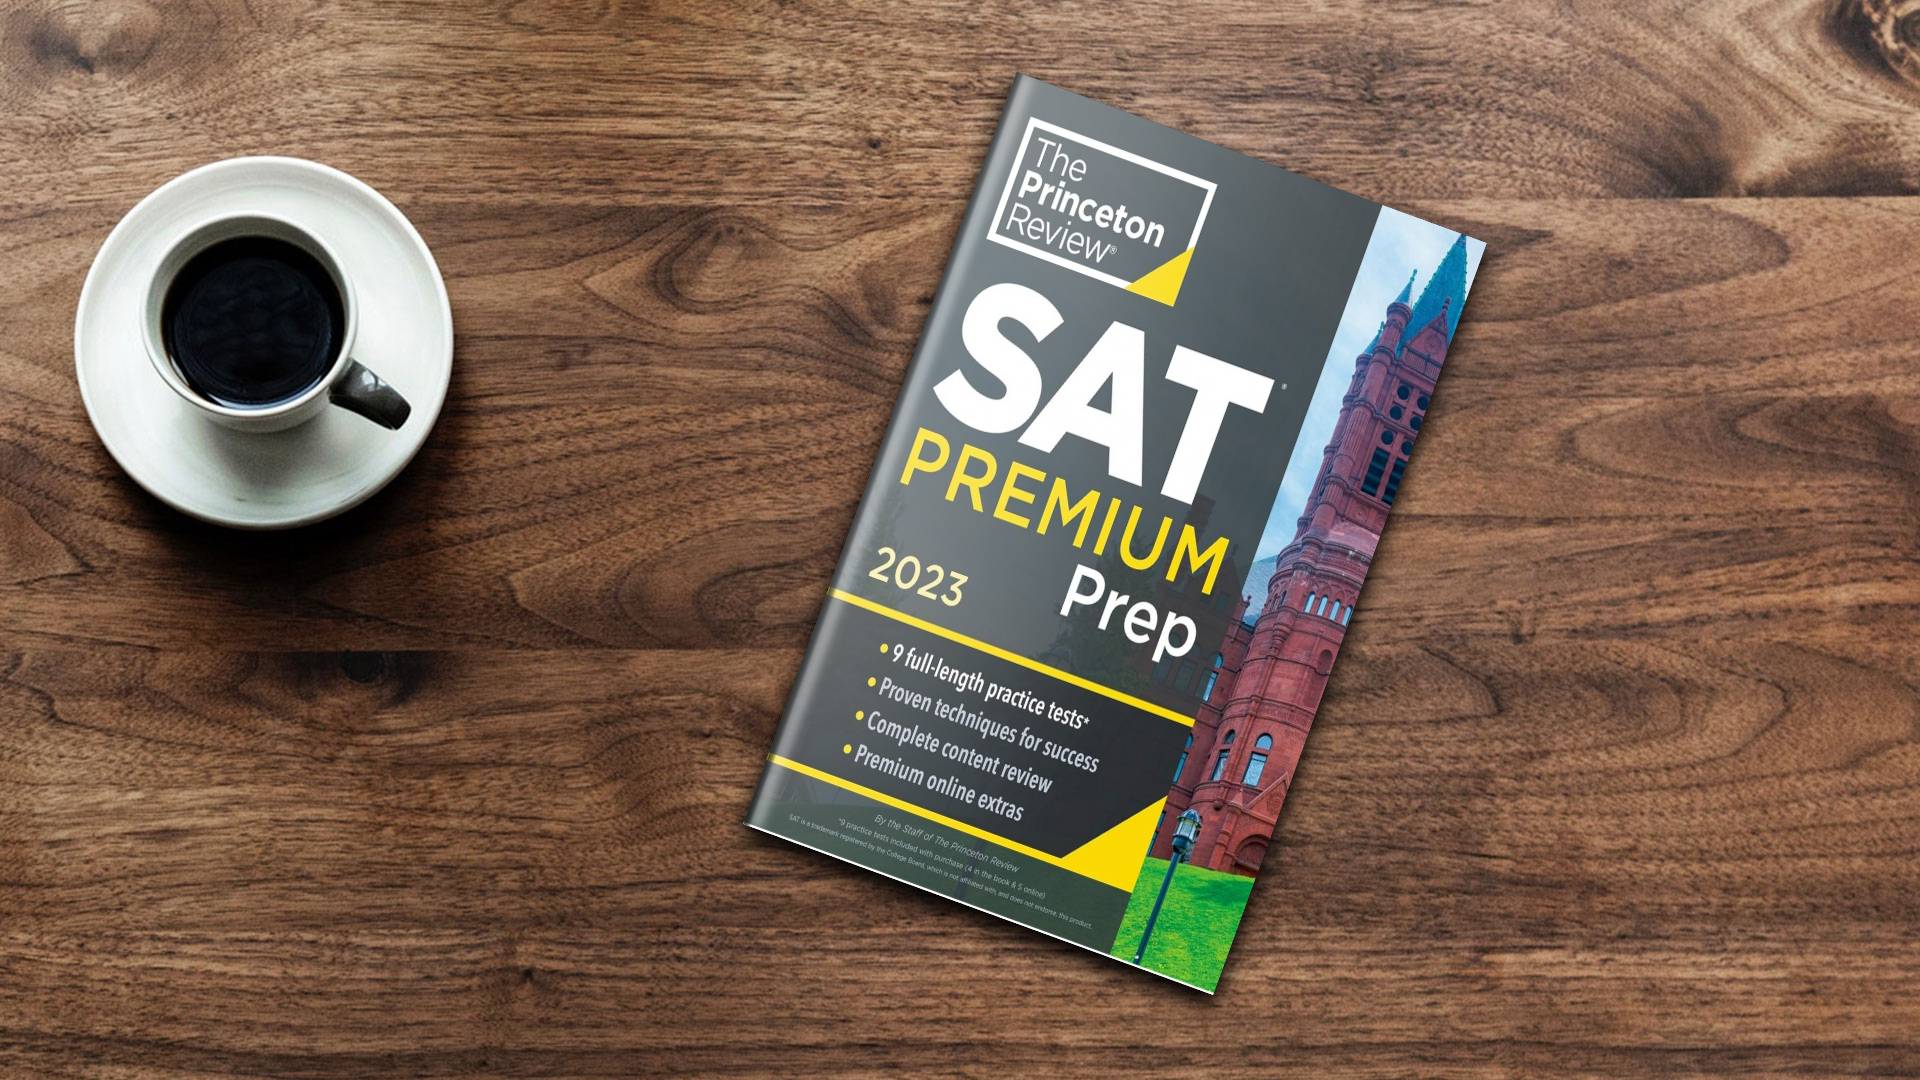 کتاب Princeton Review SAT Premium Prep 2023 پرینستون ریویو اس ای تی پریمیوم